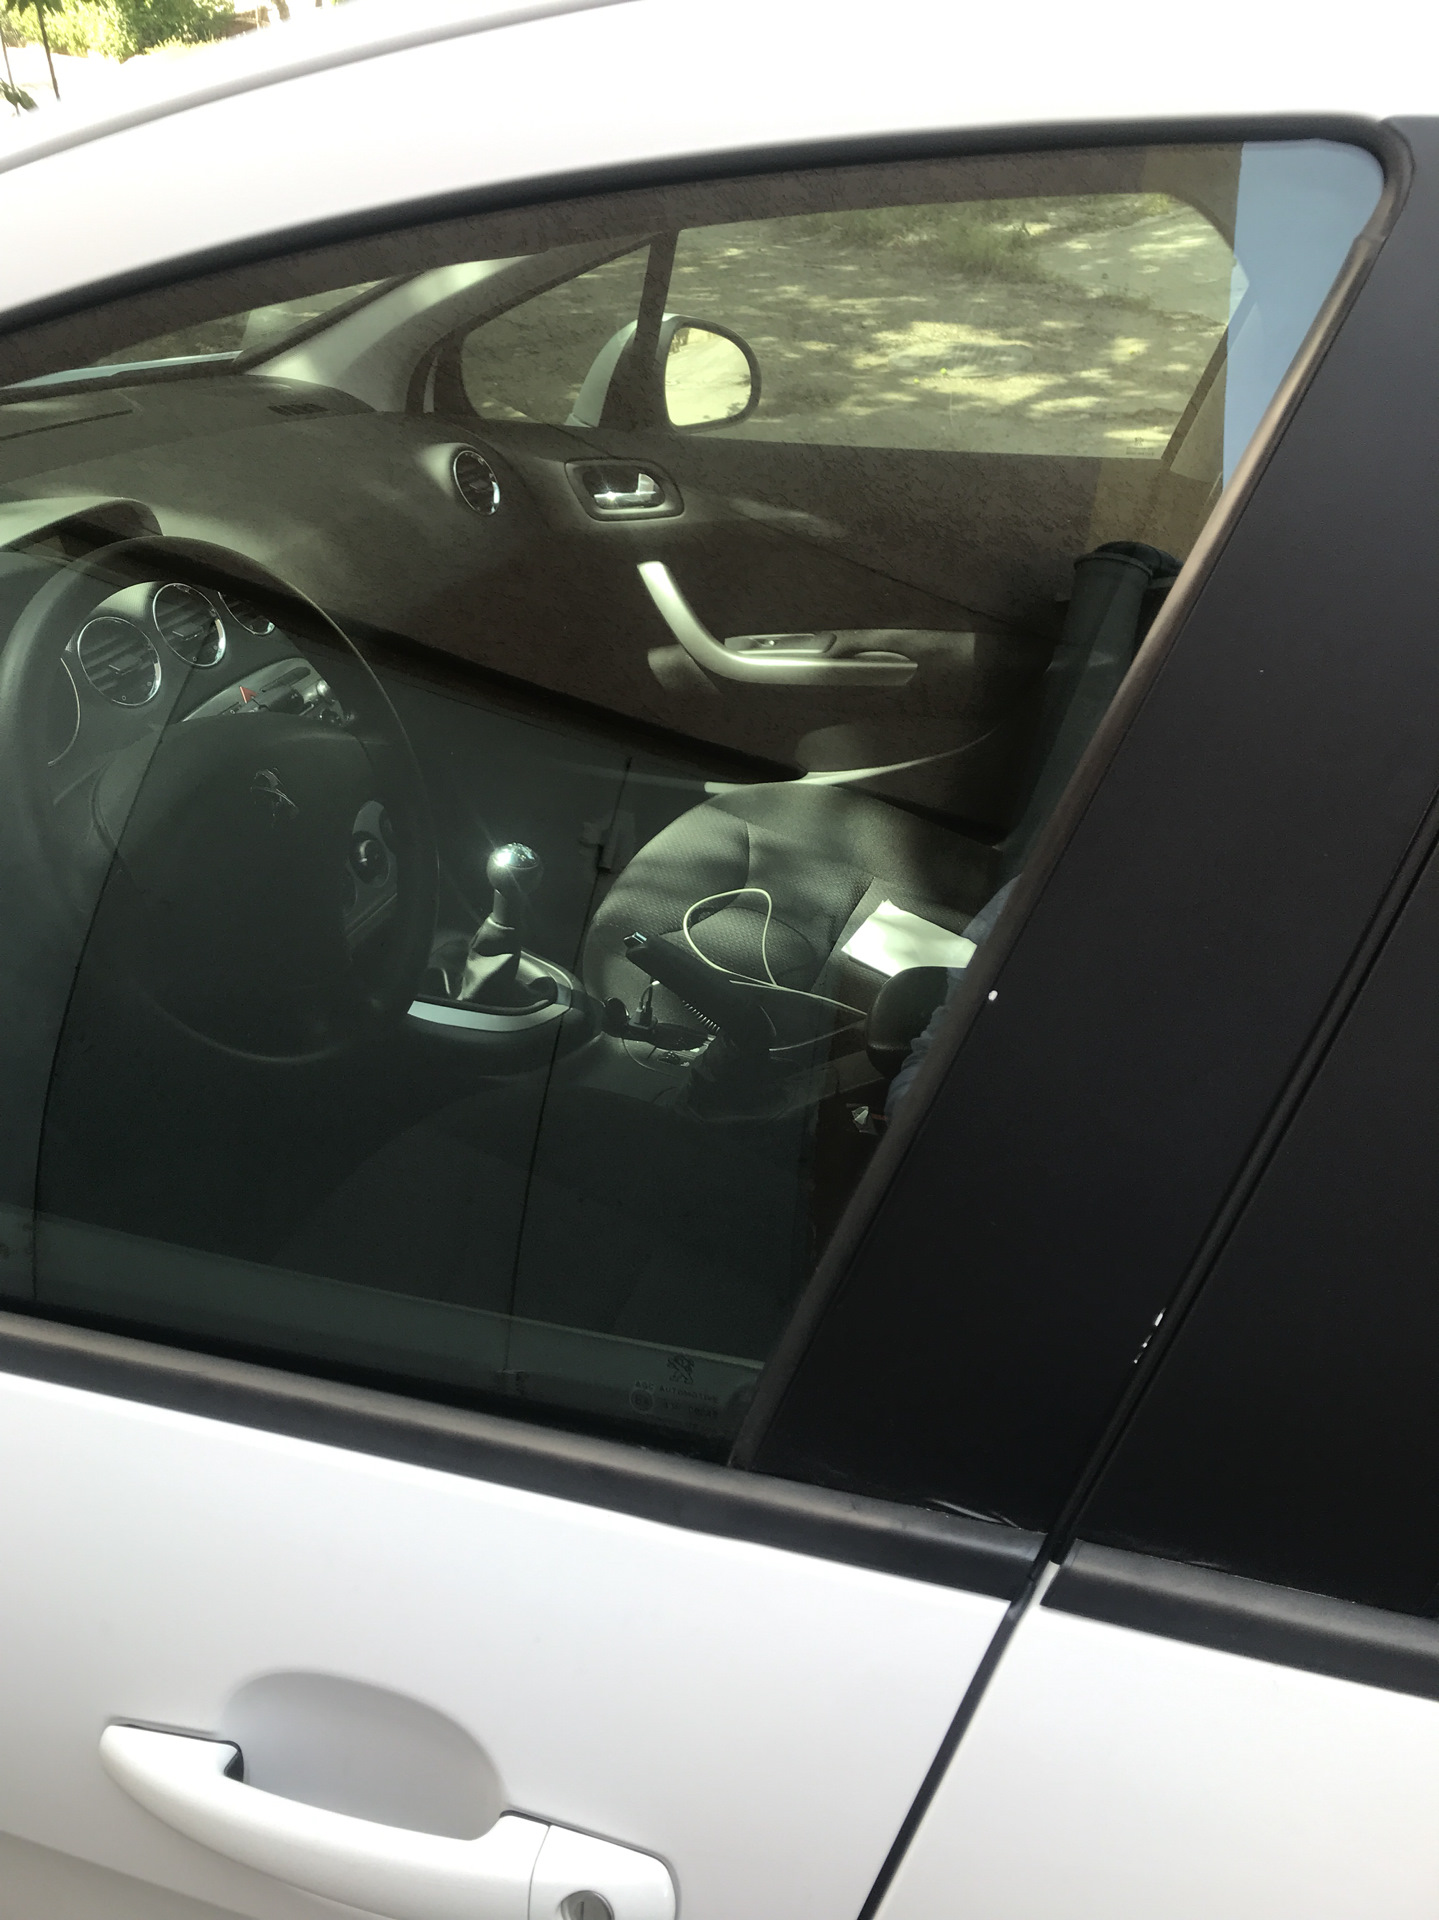 Какая разрешена тонировка стекол автомобиля. Тонировка передних стекол Пежо 408 драйв. Тонировка 5% изнутри Peugeot 408. Разрешенная тонировка на передние боковые стекла 2022. Пежо 408 тонировка.